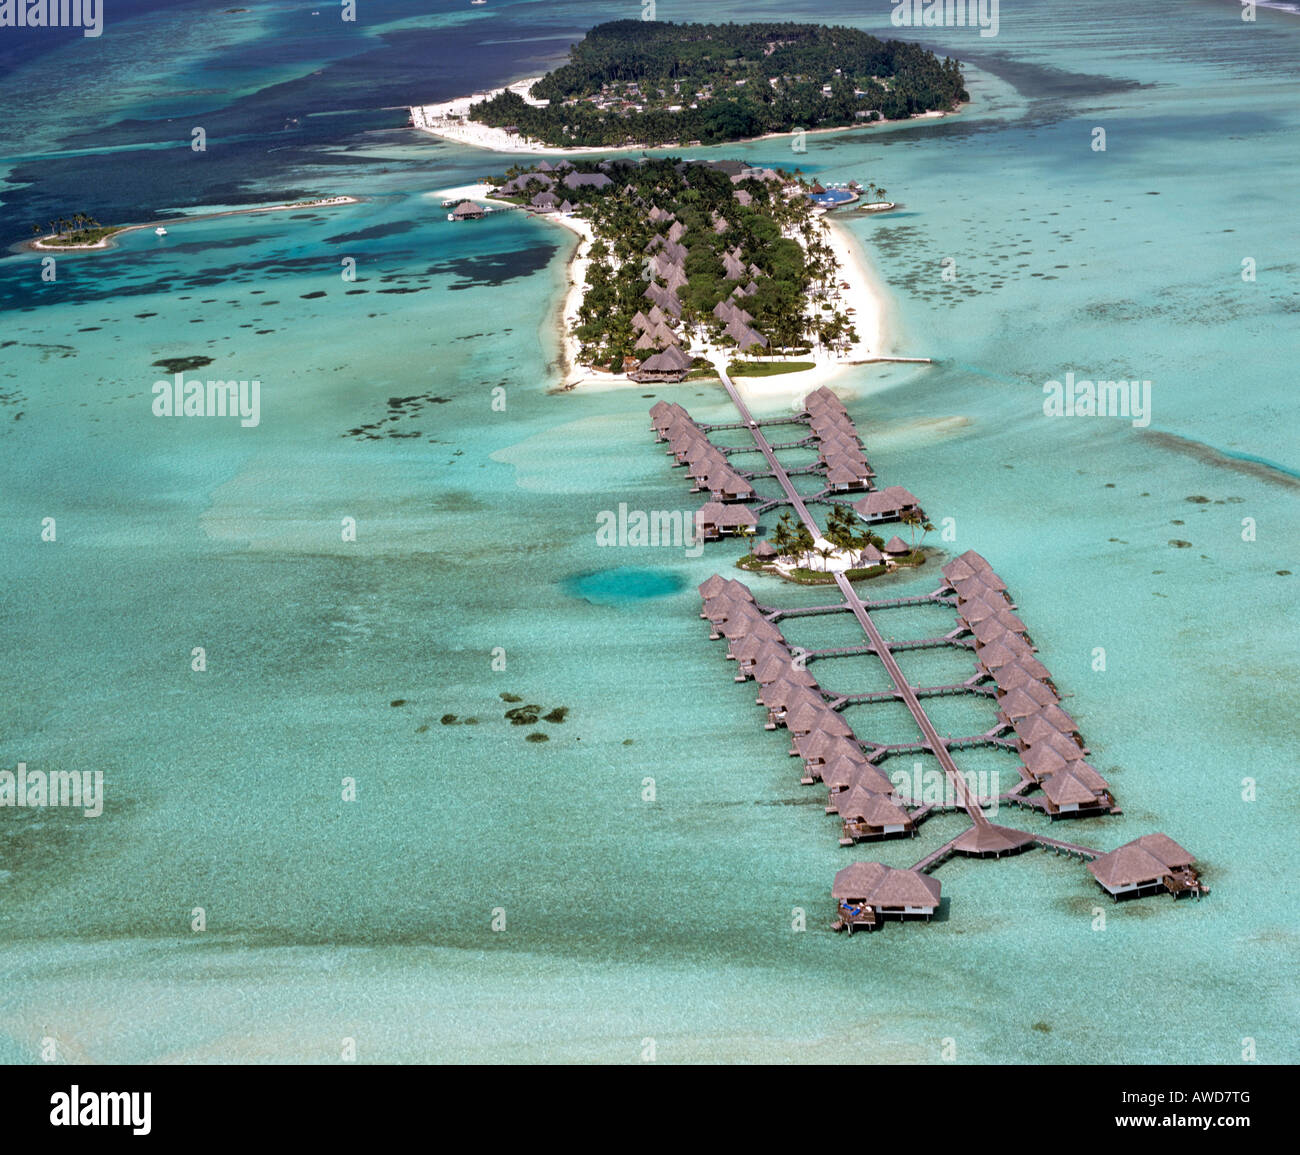 Aerial view of the Four Seasons Resort at Kuda Huraa, North Male Atoll, Maldives, Indian Ocean Stock Photo